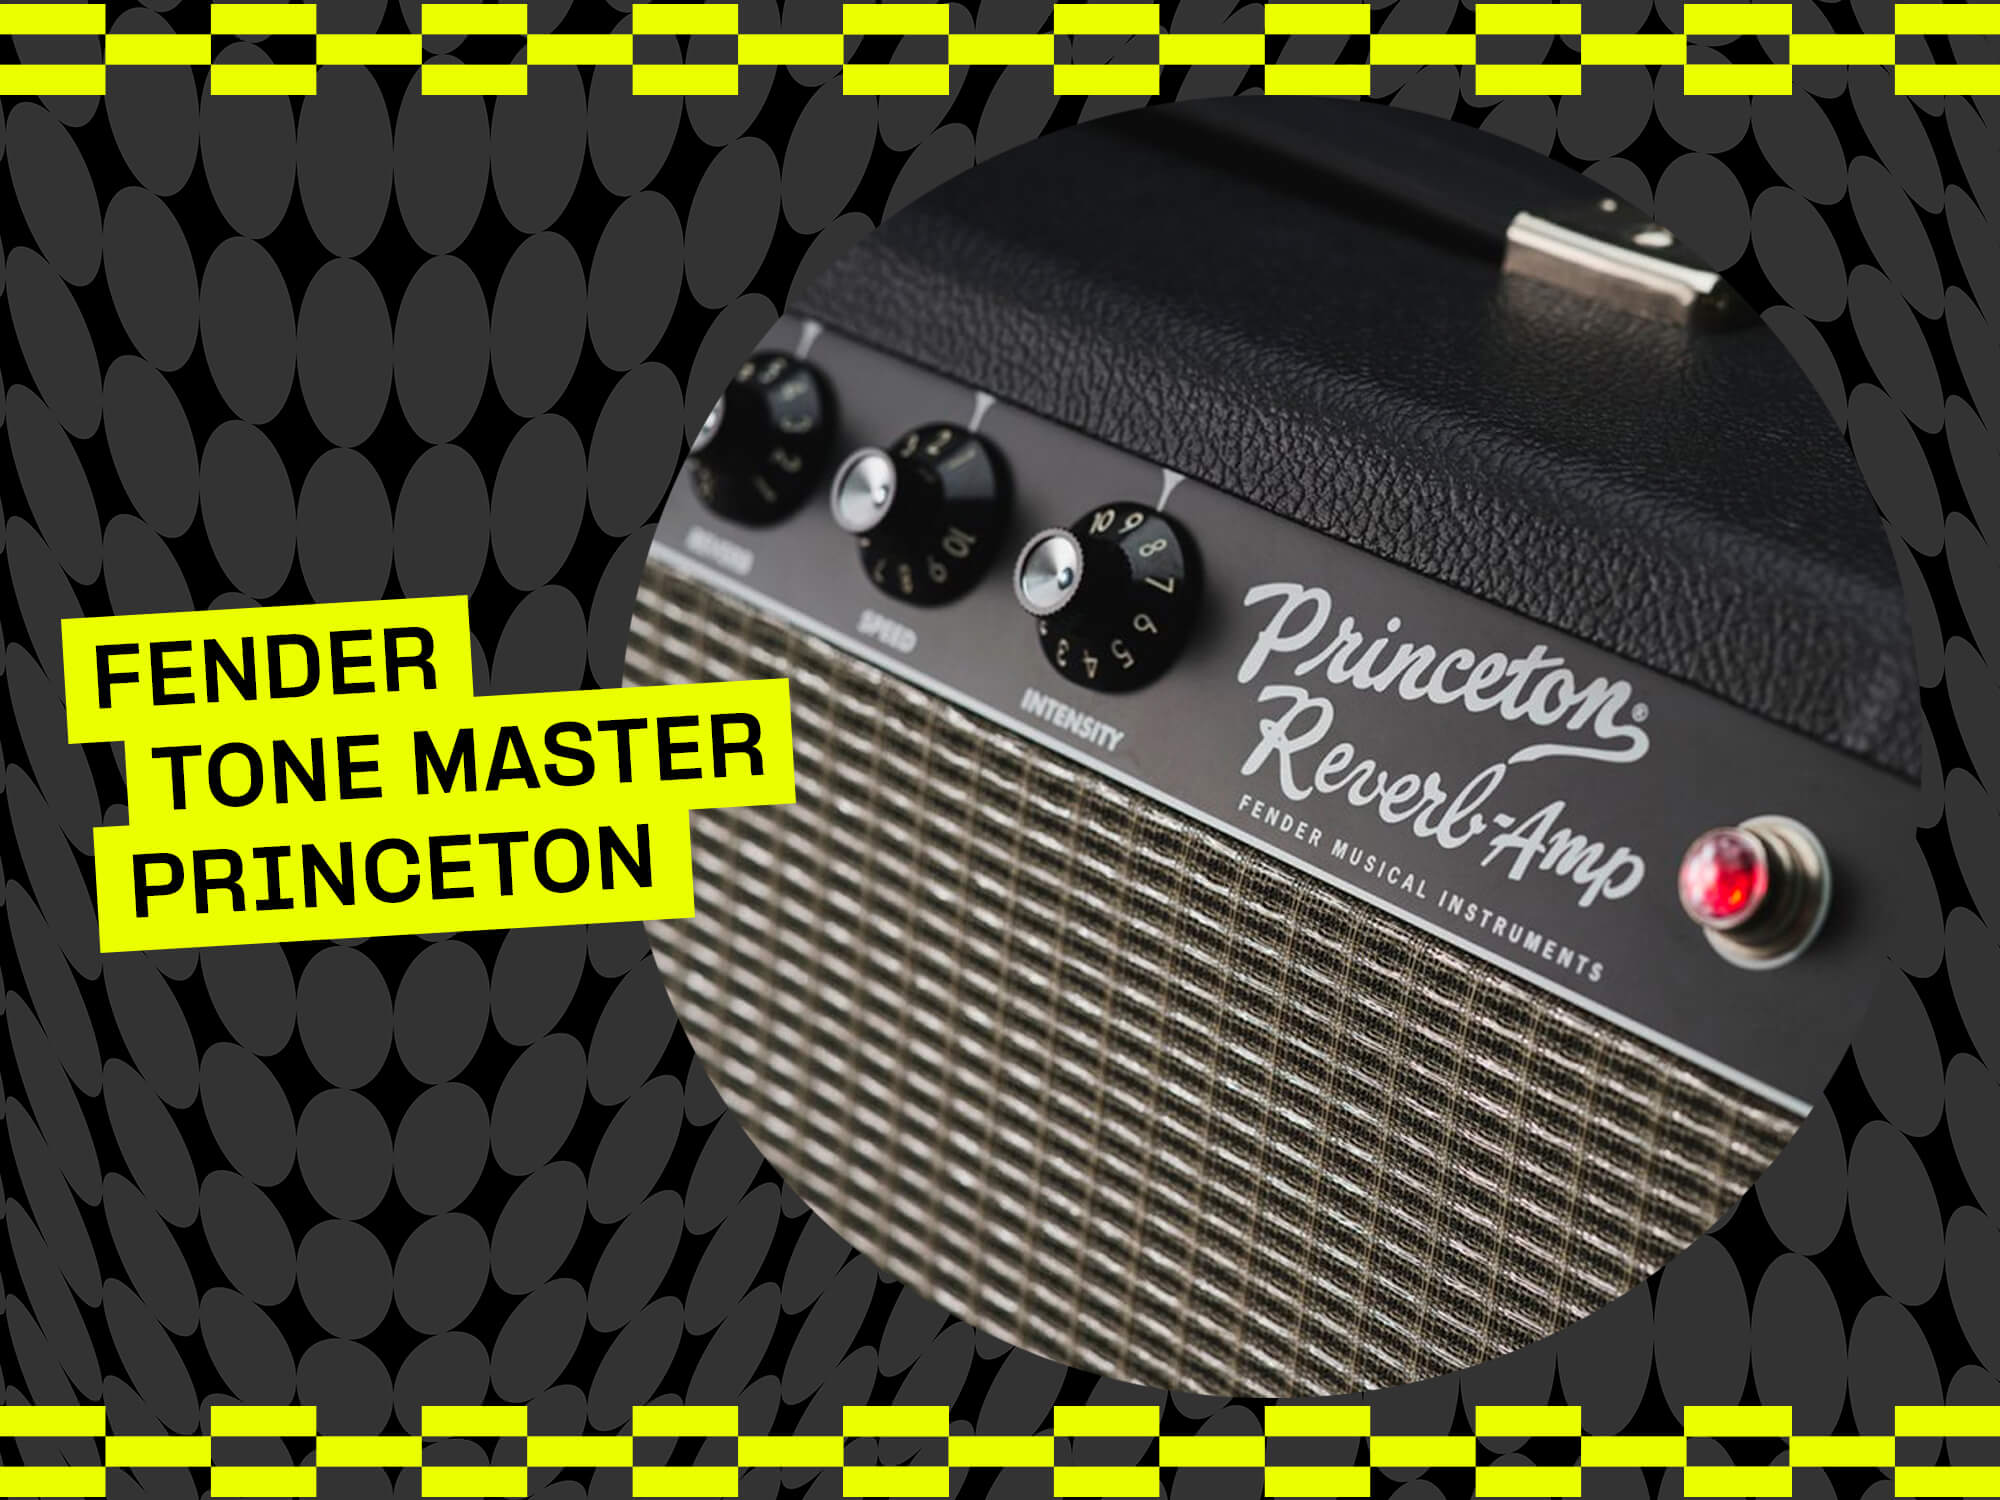 60 Seconds S1E3: Fender Tone Master Princeton Reverb